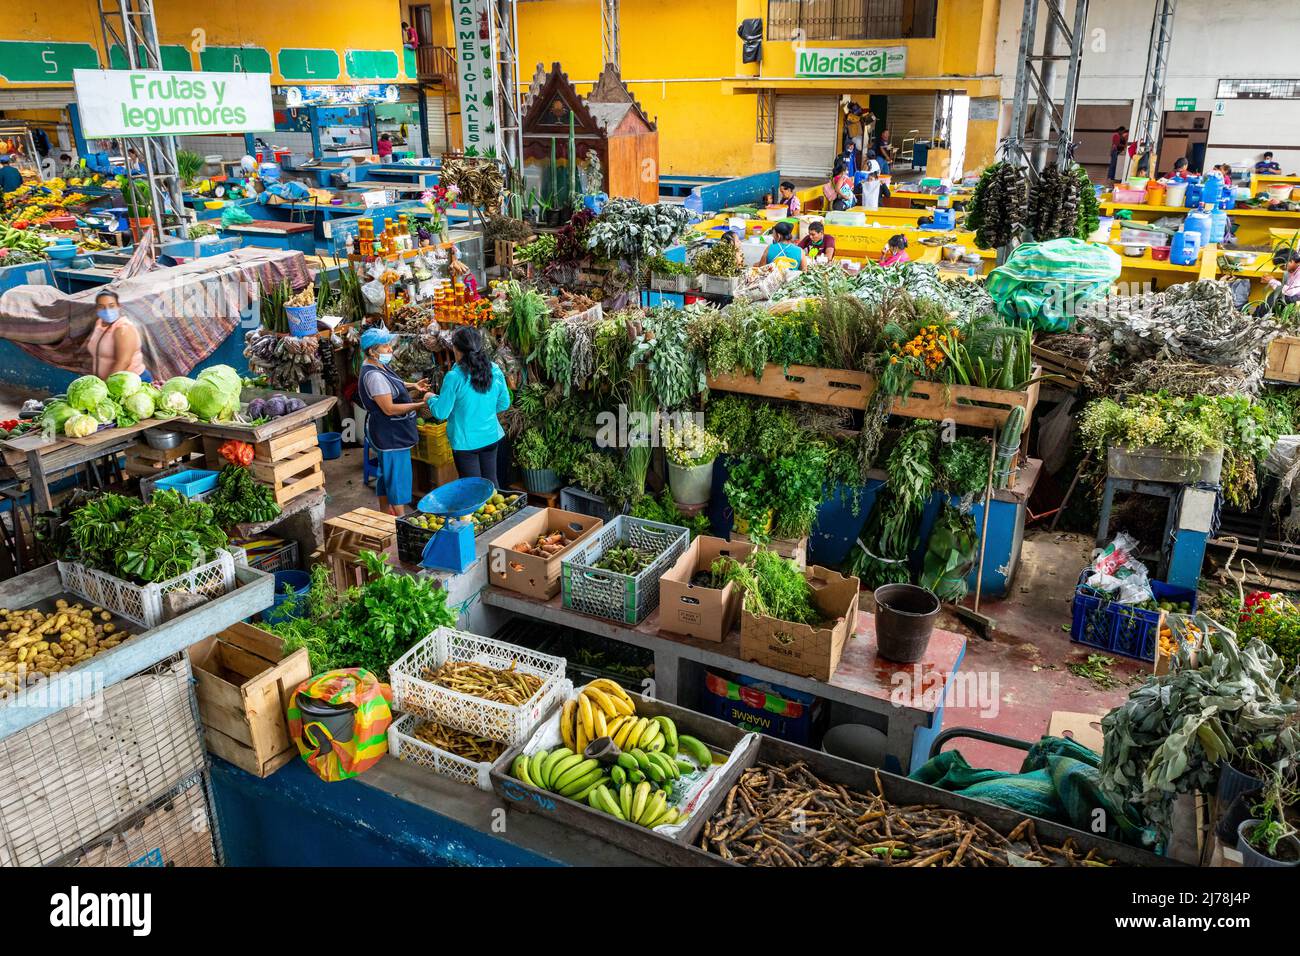 PUYO, ECUADOR - 20. APRIL 2022: Traditioneller ecuadorianischer Lebensmittelmarkt für landwirtschaftliche Produkte in Puyo, Ecuador. Oriente. Südamerika. Stockfoto